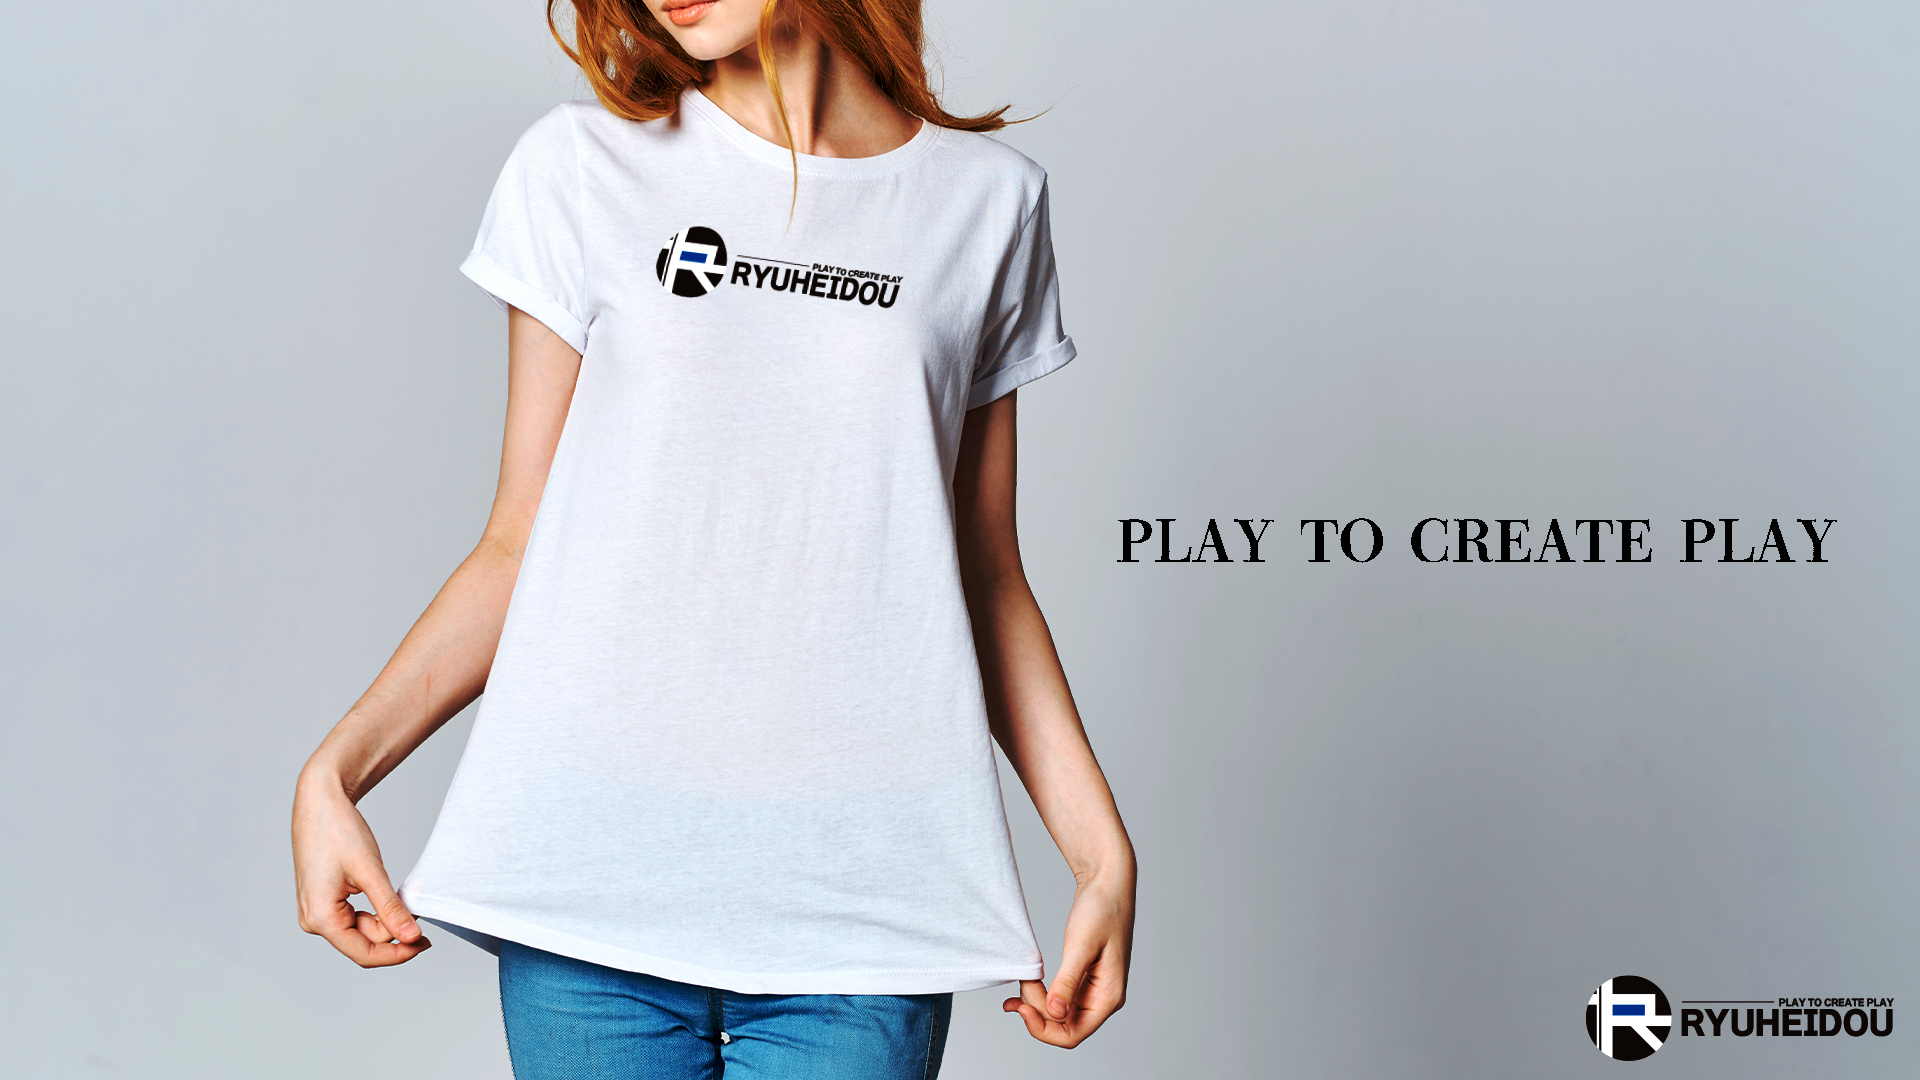 PLAY TO CREATE PLAY 竜平堂のオリジナルロゴTシャツの画像